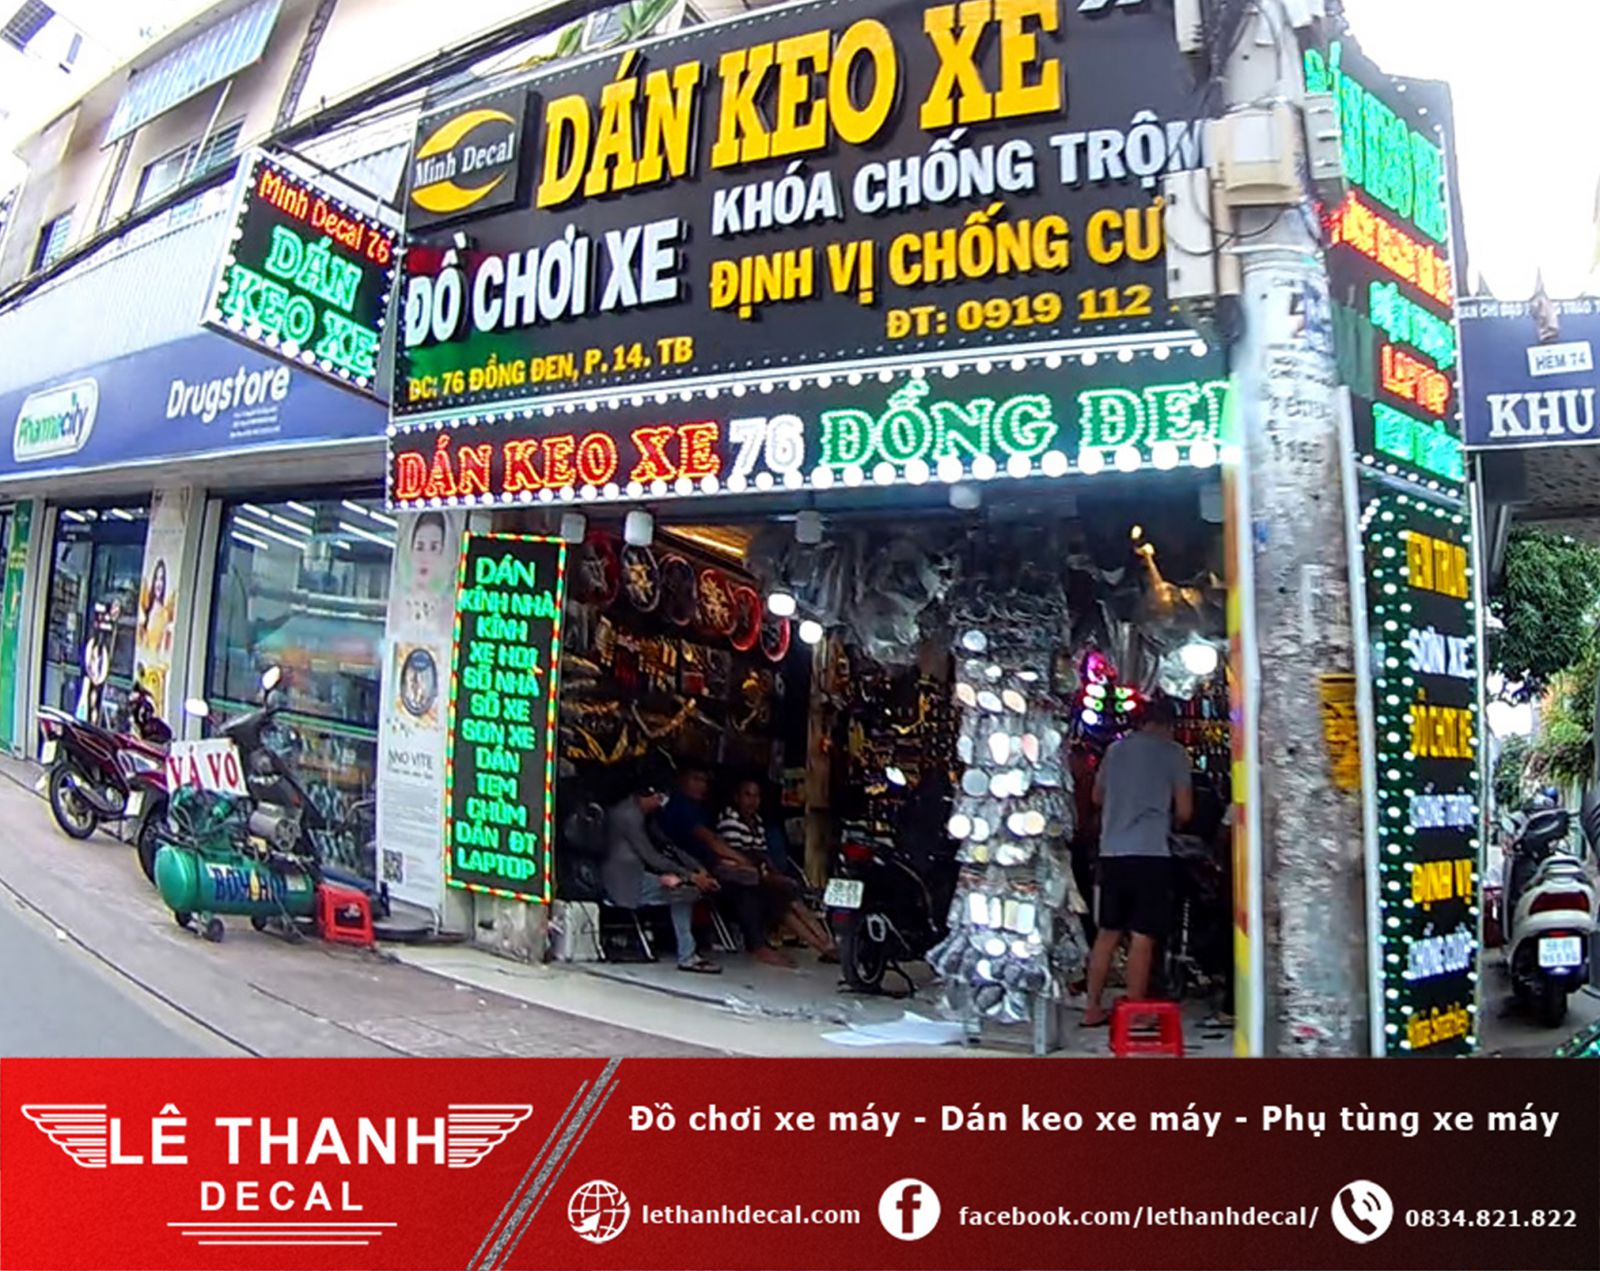 [TOP] 10+ tiệm dán decal xe máy tại quận Tân Bình uy tín, chất lượng 2023